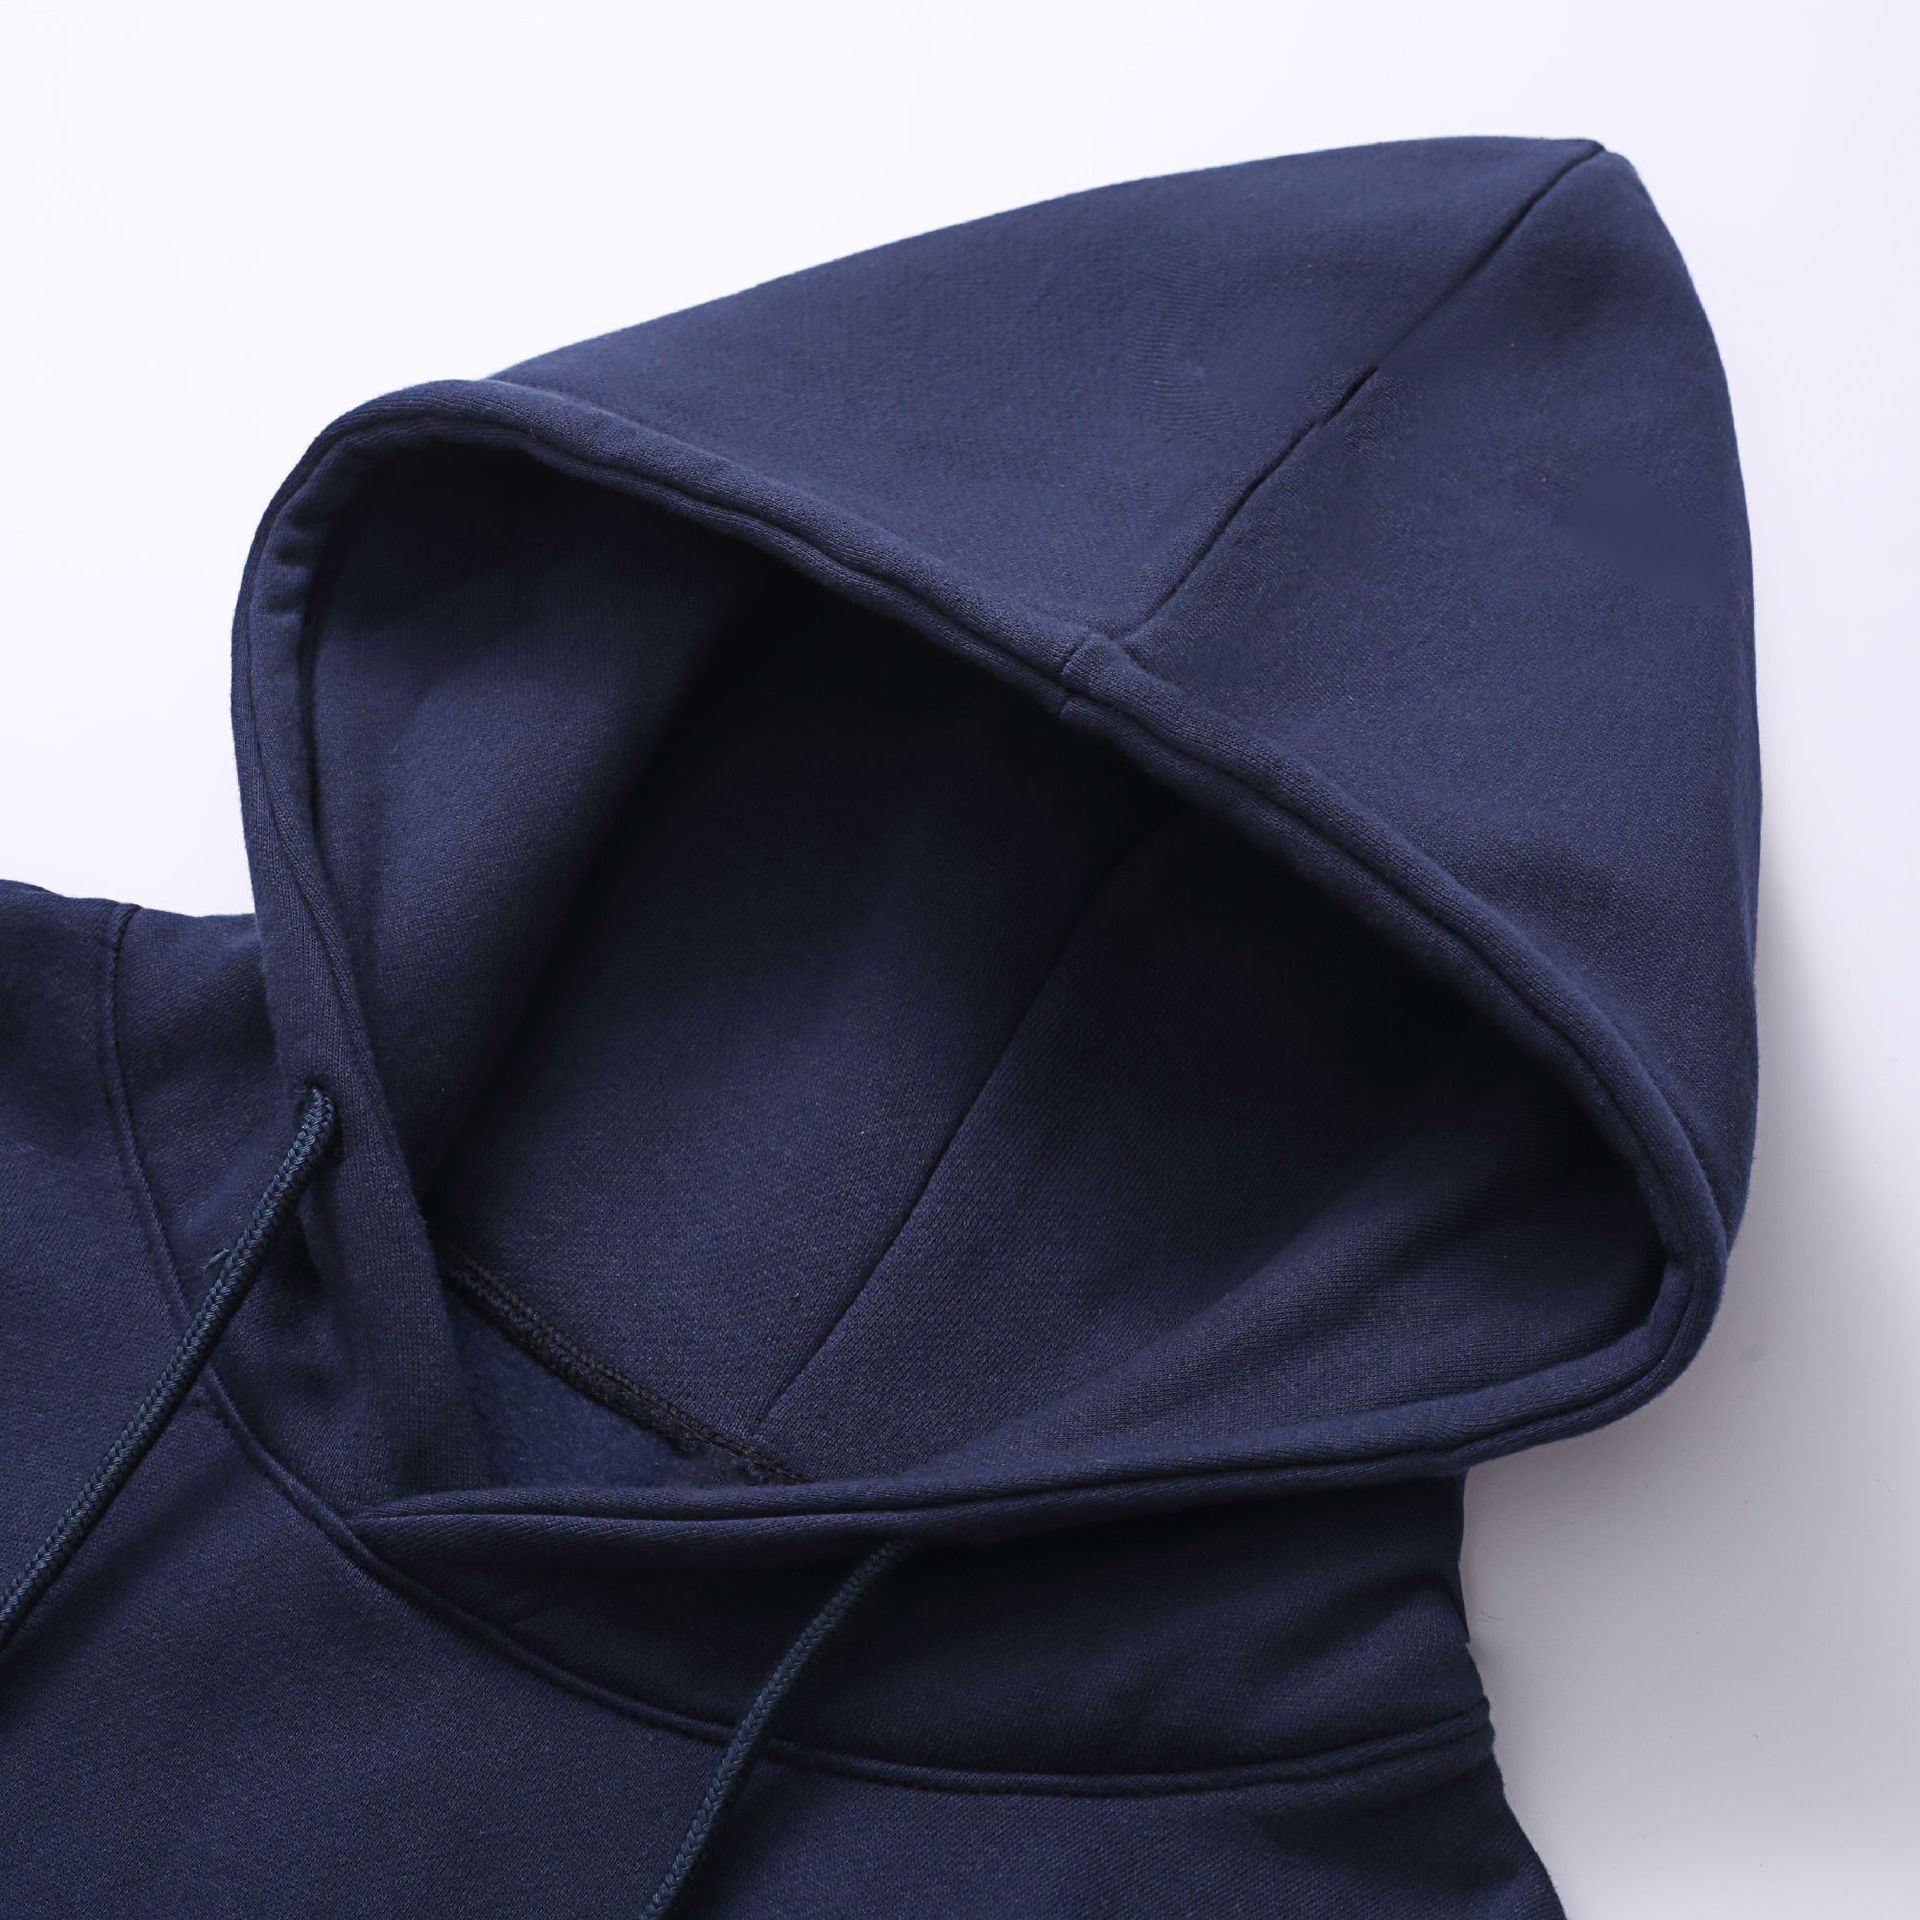 2021 nouveau pull en coton à capuche en molleton personnalisé code européen pour hommes transfrontalier marque de mode sport à capuche costume